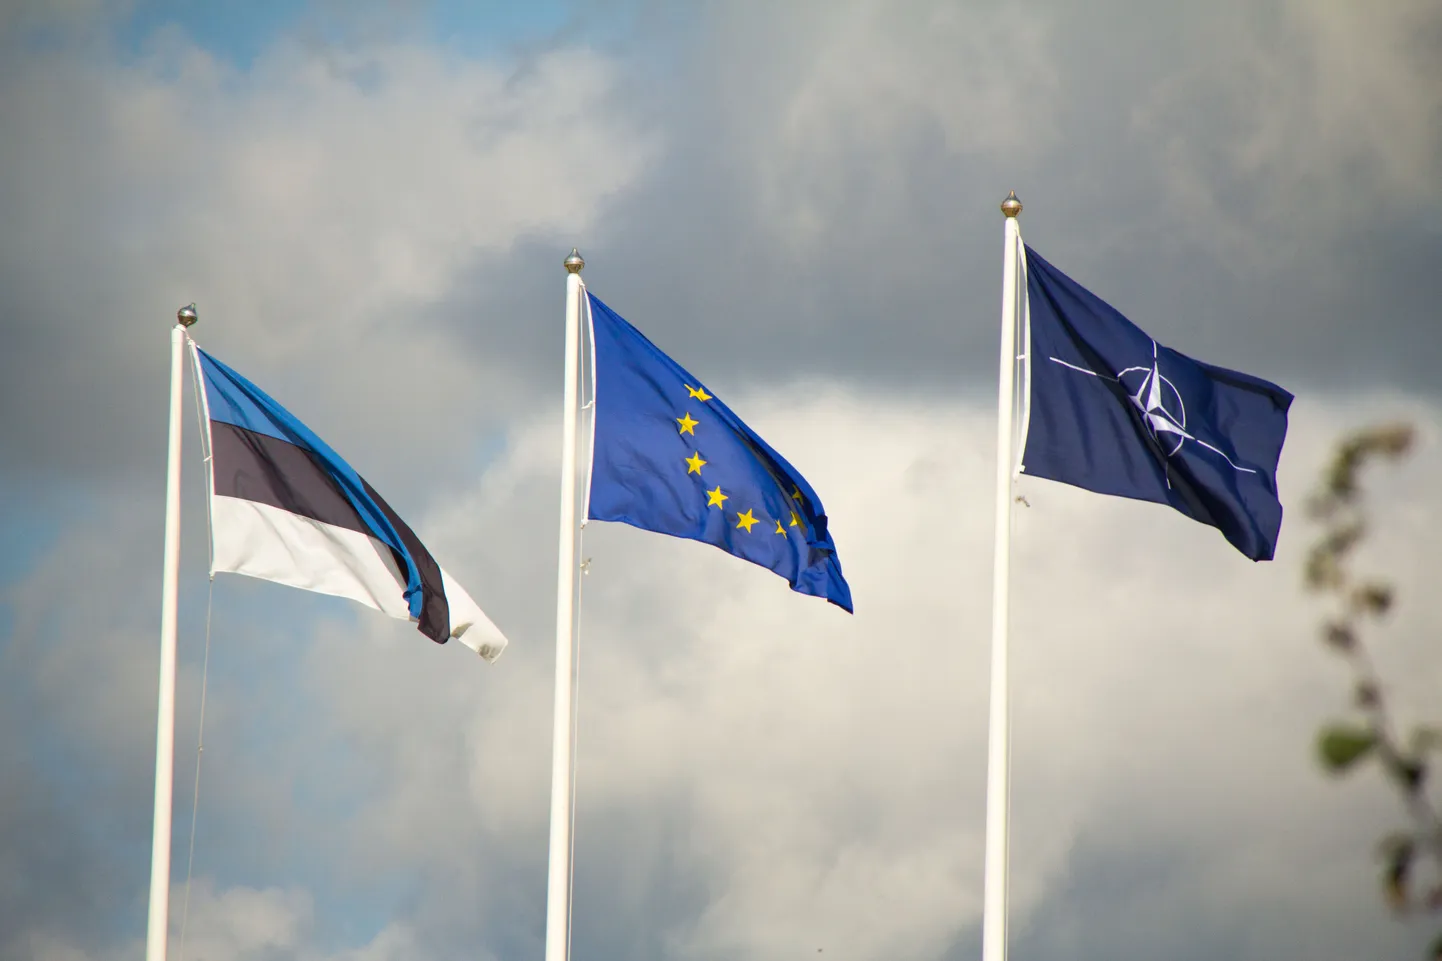 Флаги Эстонии, Европейского союза и НАТО. Снимок иллюстративный.